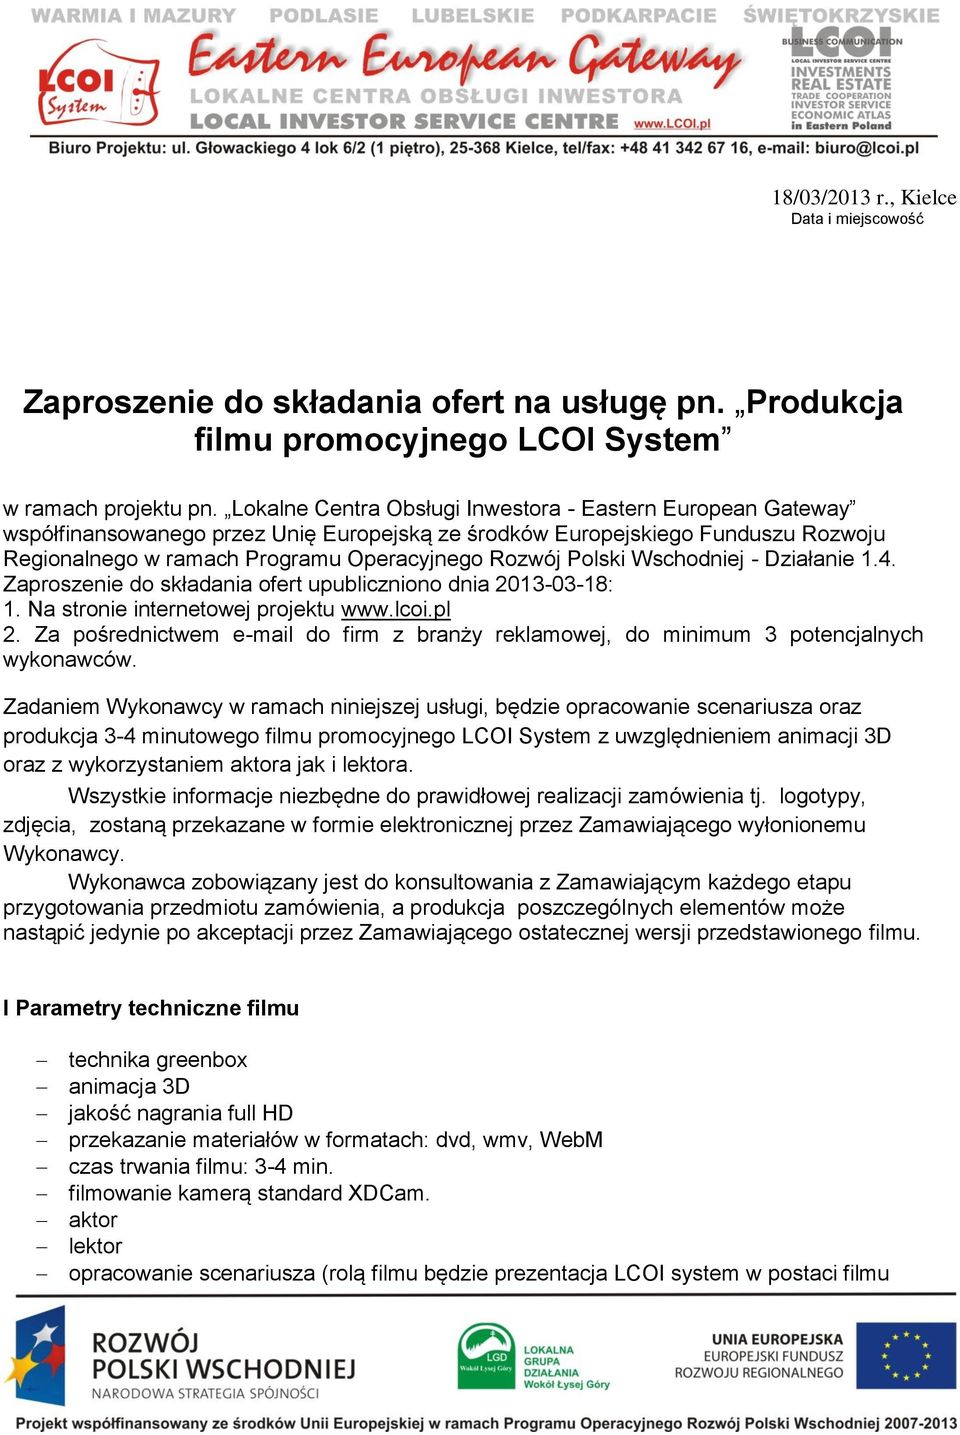 Polski Wschodniej - Działanie 1.4. Zaproszenie do składania ofert upubliczniono dnia 2013-03-18: 1. Na stronie internetowej projektu www.lcoi.pl 2.